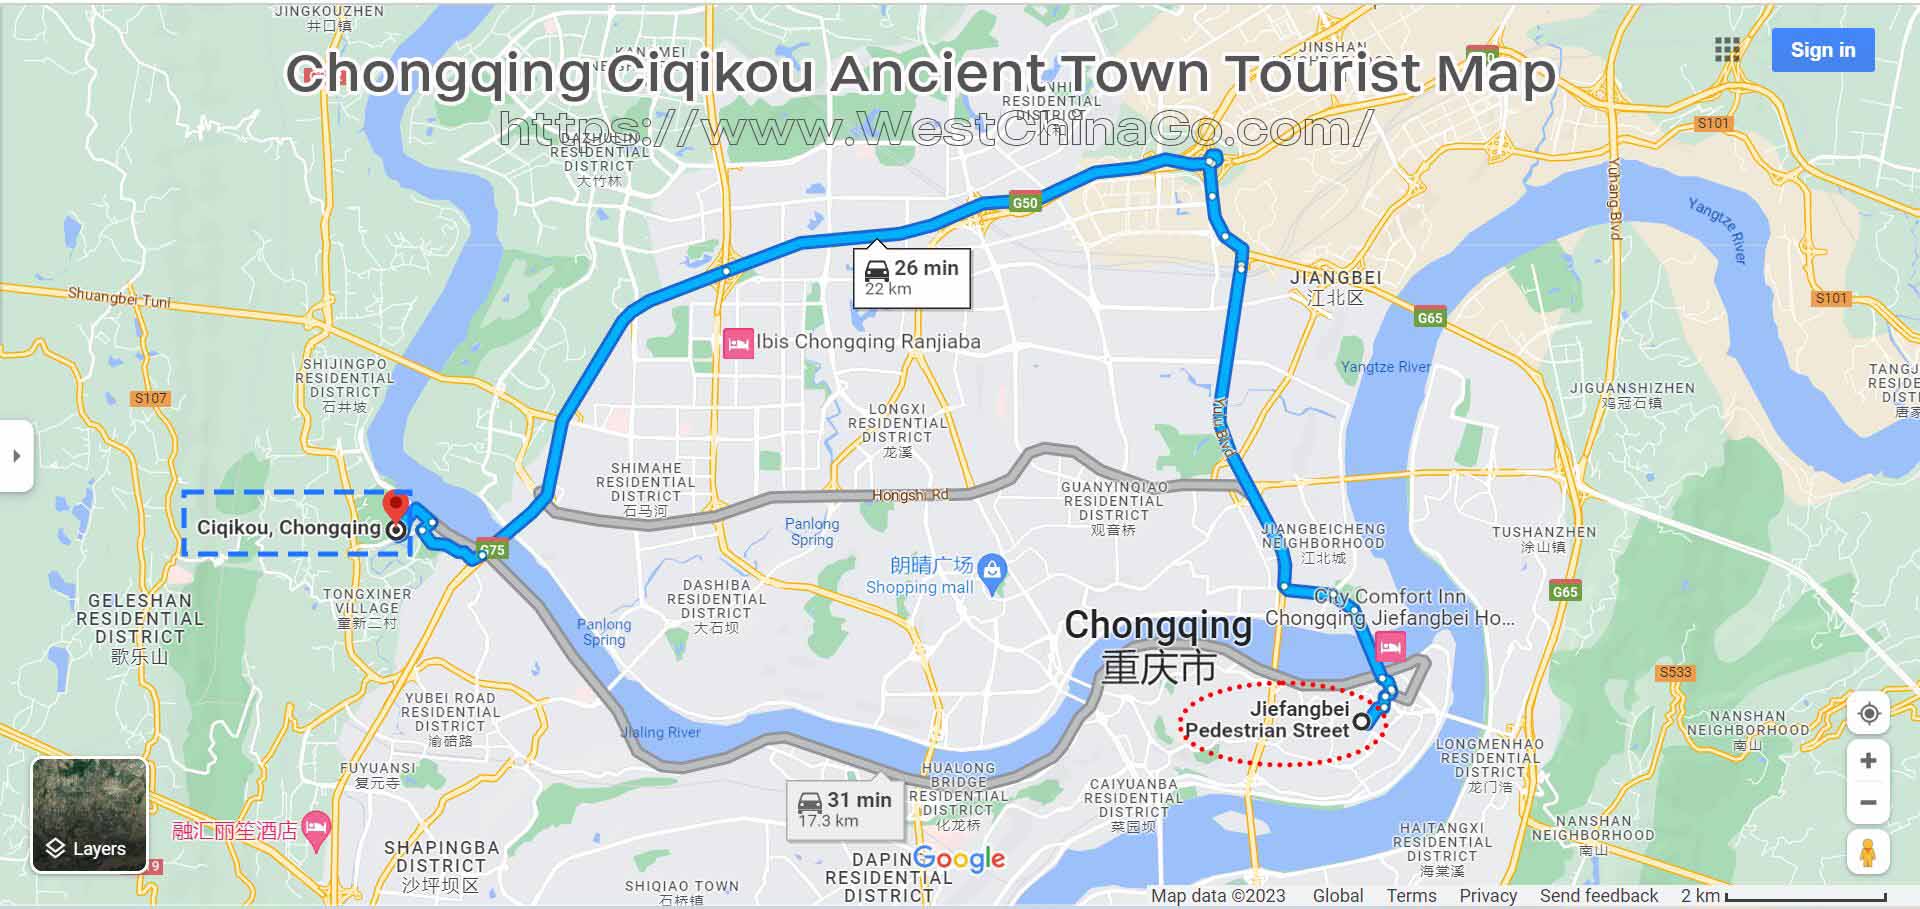 ChongQing Ciqikou Ancient Town Tourist Map